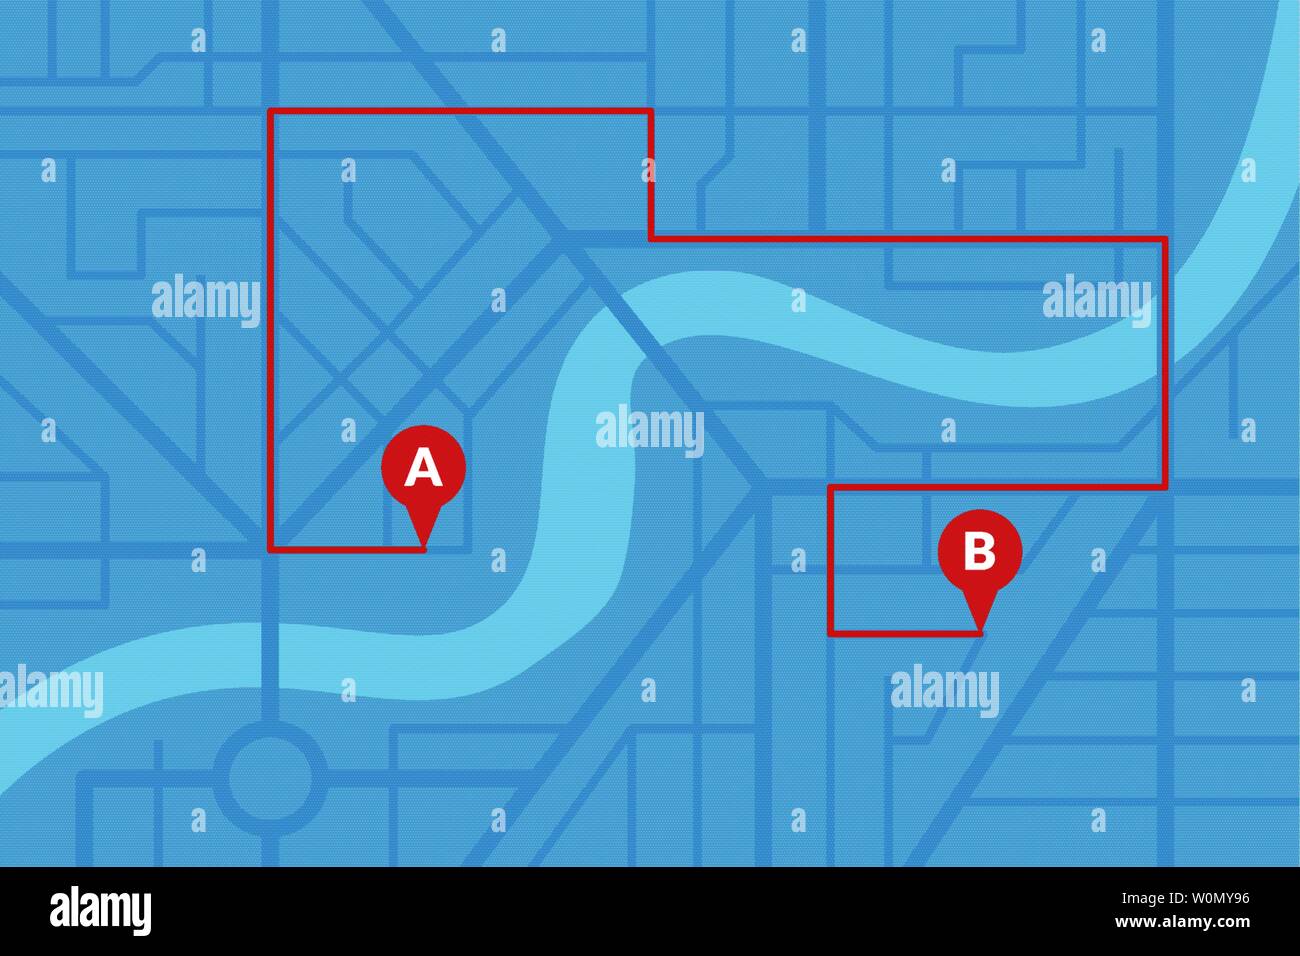 Stadt Stadtplan plan mit GPS-Pins und Navigation Route von A nach B Punkt Marker. Vektor Blau eps Abbildung: Schema Stock Vektor